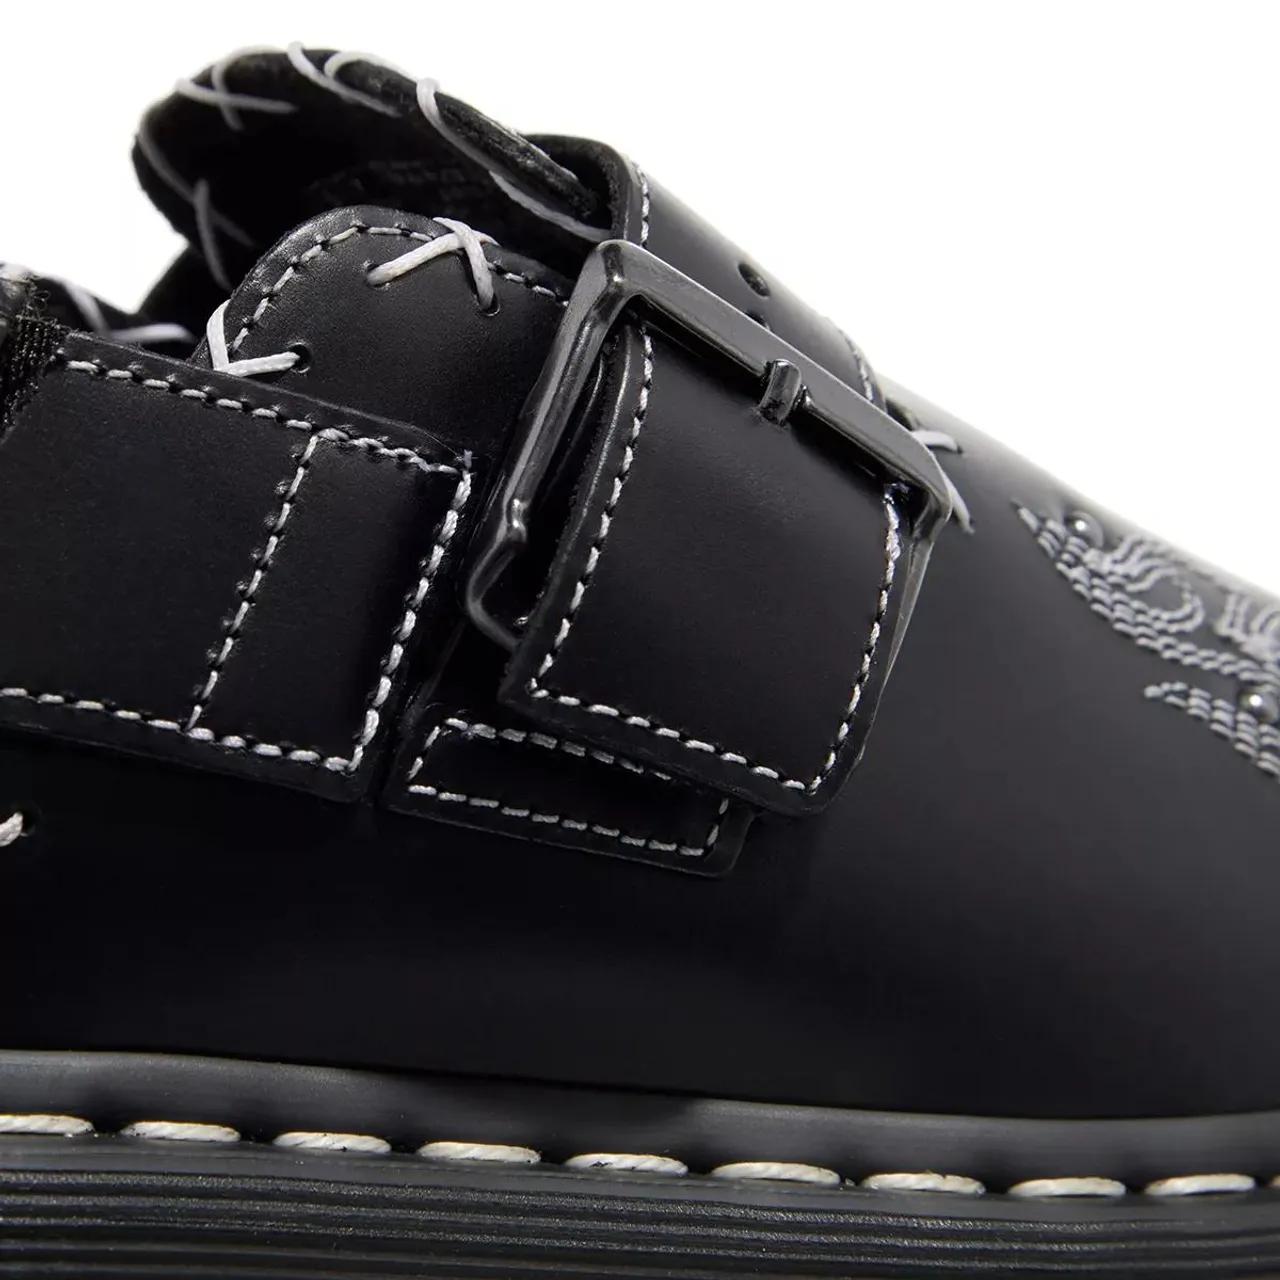 Dr. Martens Sandals - Sling Back Shoe - black - Sandals for ladies